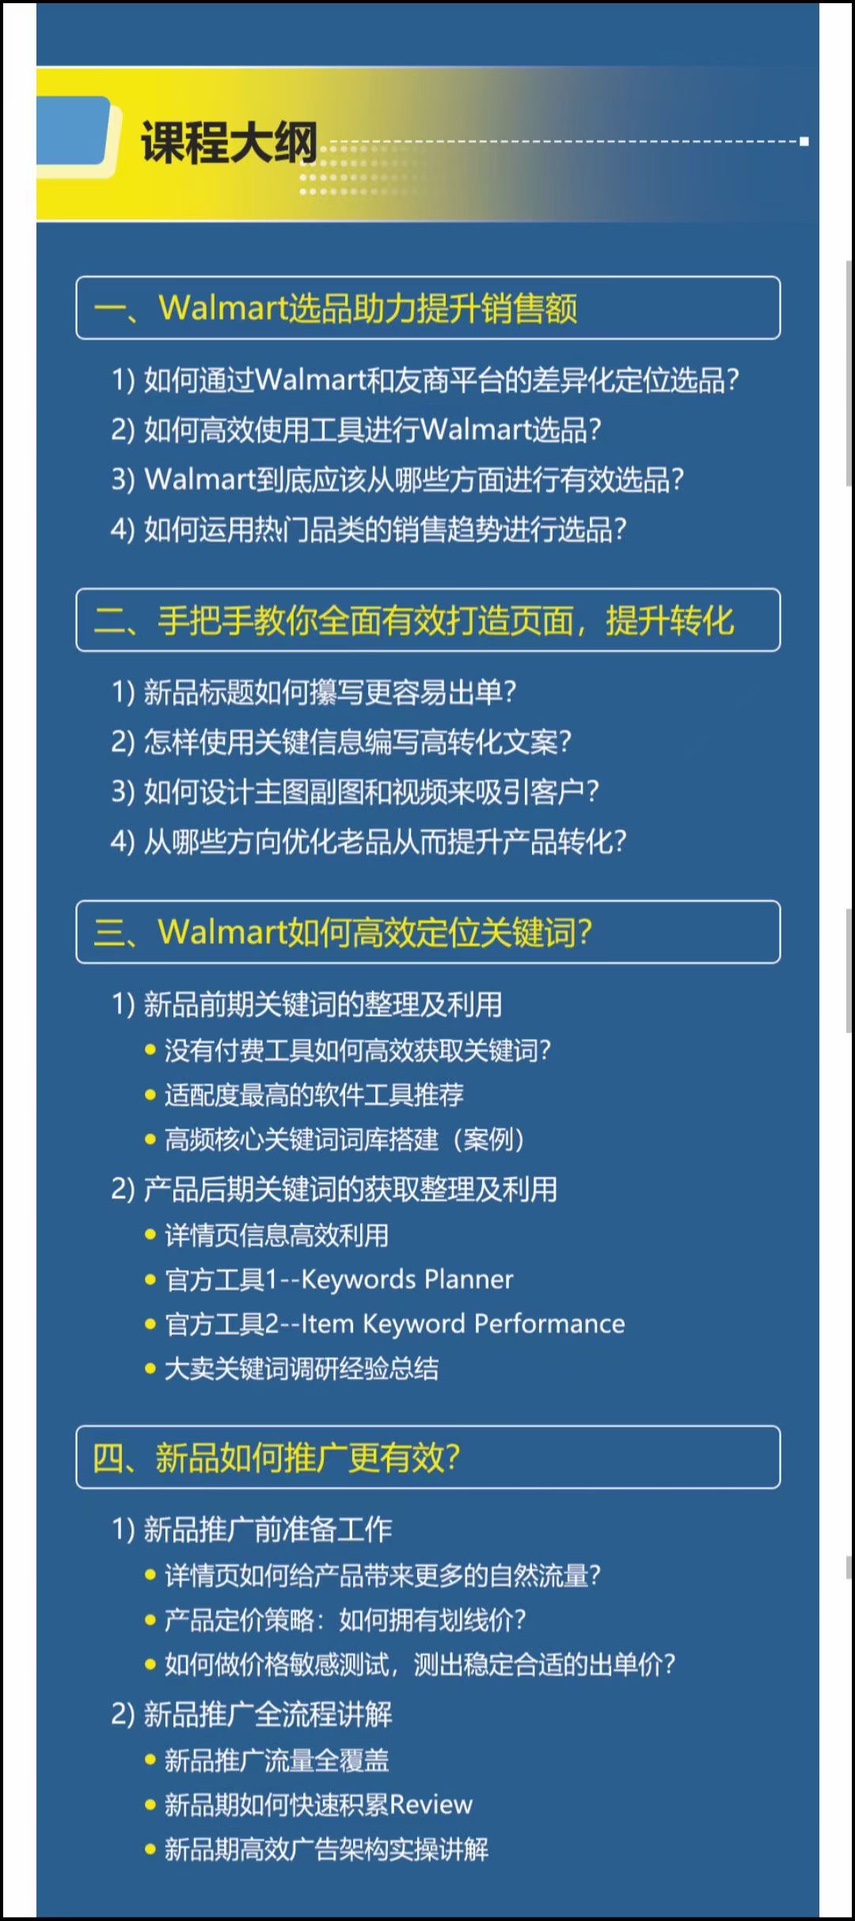 【电商上新】055. Walmart运营必备：沃尔玛高效运营技巧 选品思路、关键词词库搭建、高转化listing打造、新品推广广告架构精讲，助力全面掌握Walmart高效运营技巧。